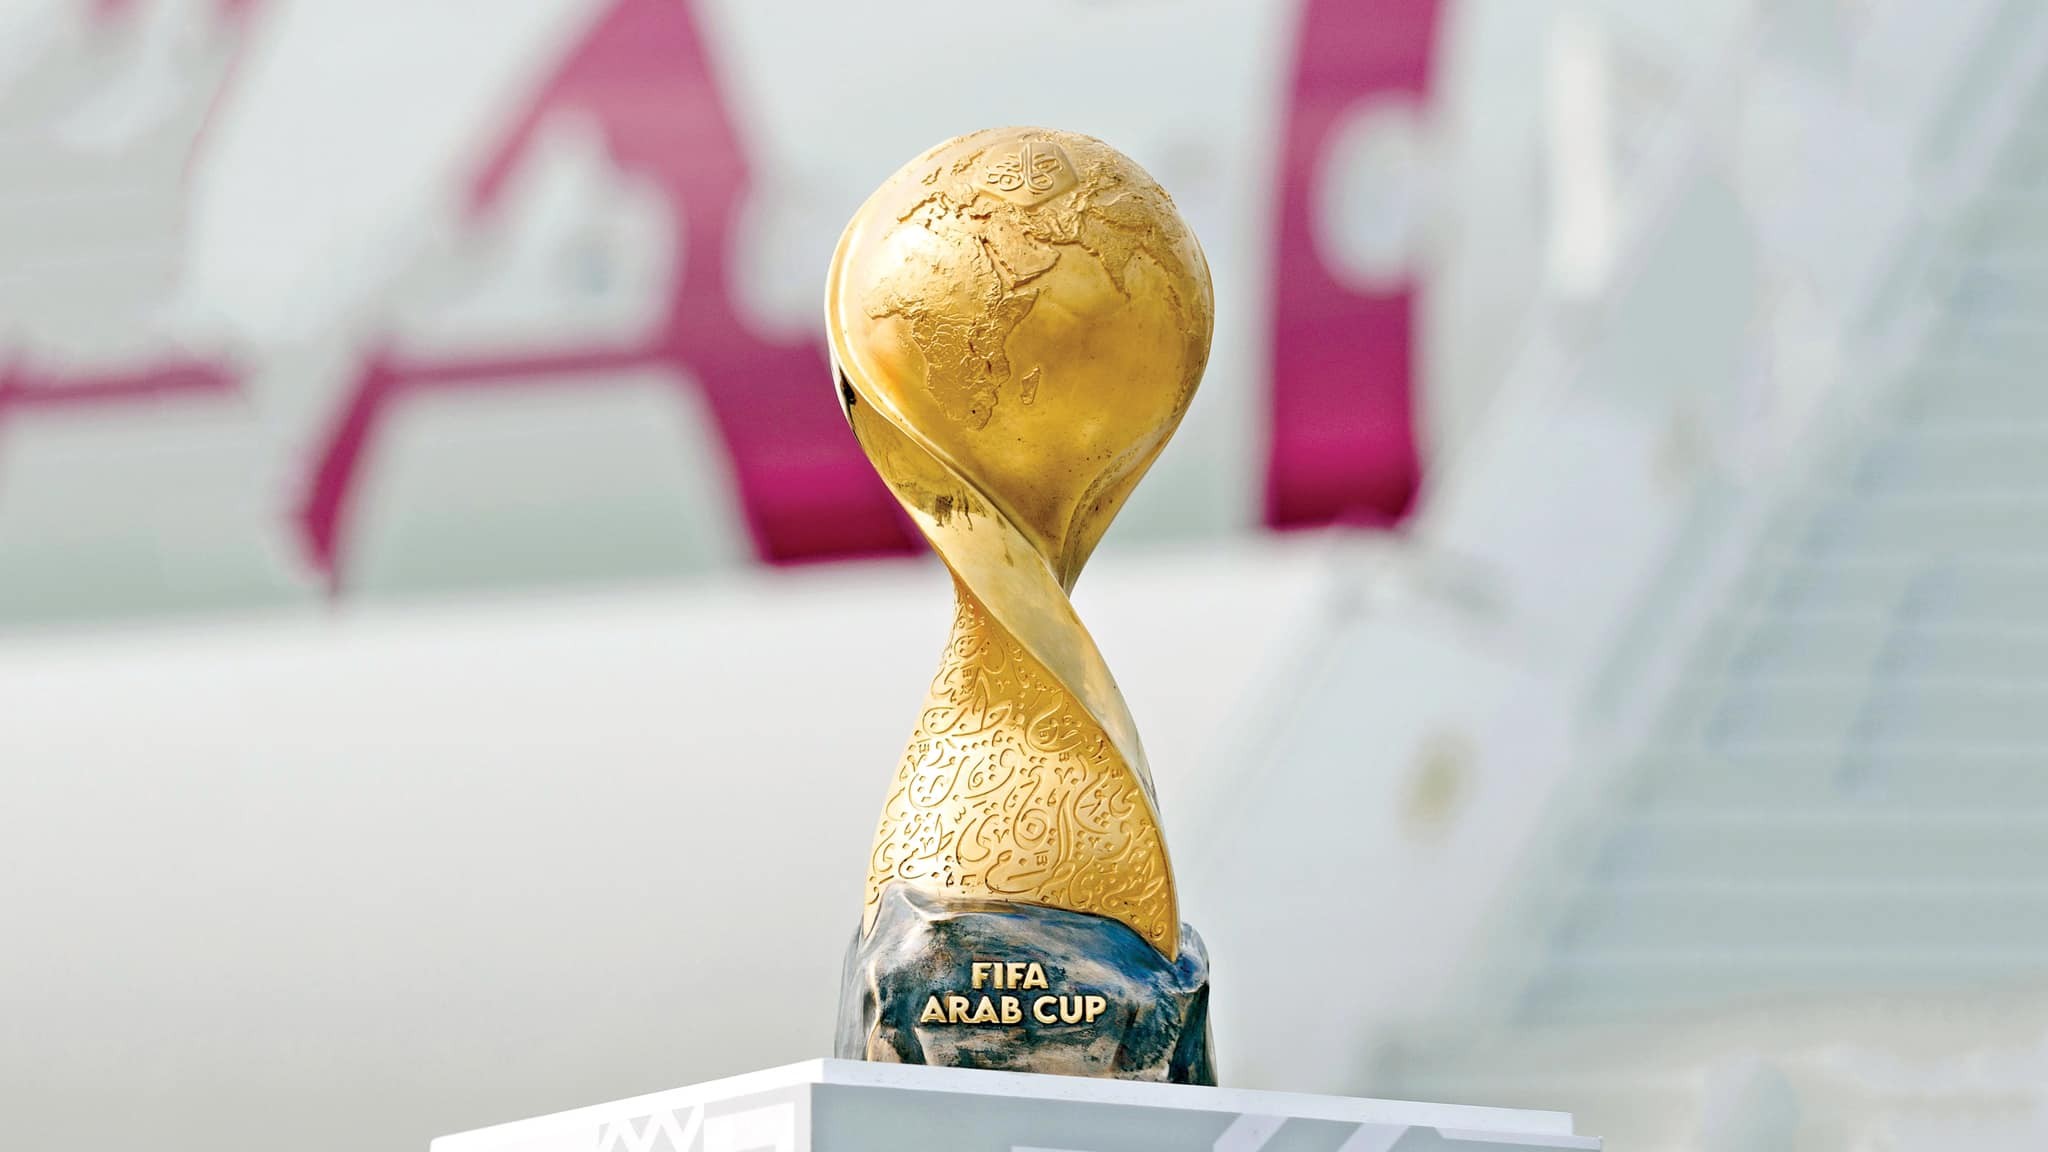 فيفا يعلن استضافة قطر لكأس العرب في النسخ الثلاث القادمة